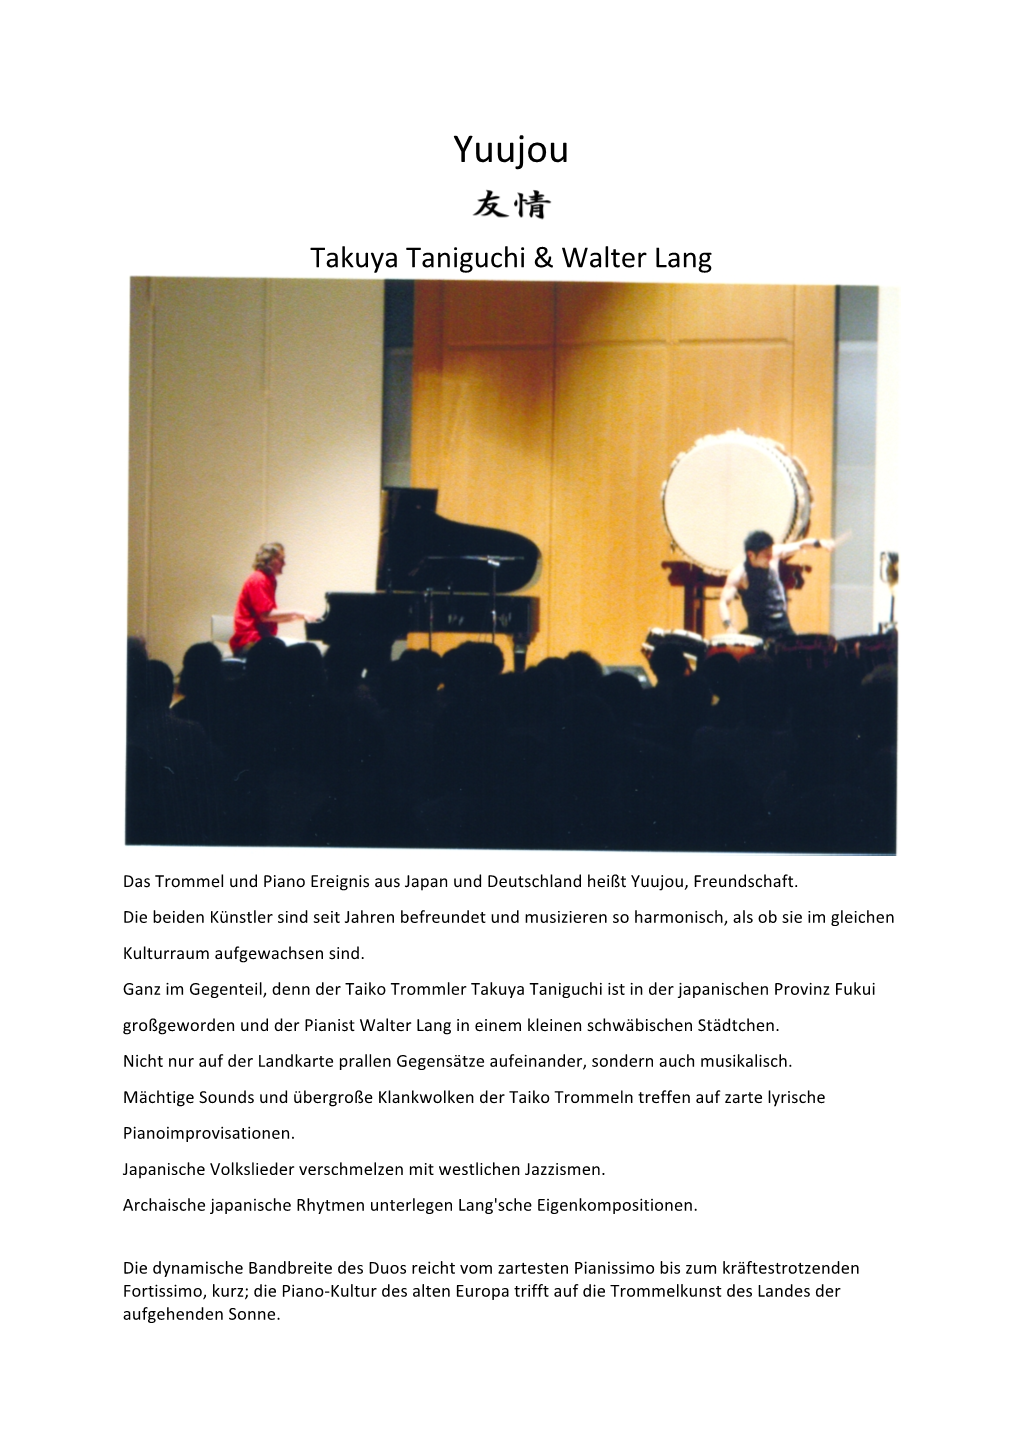 Info Yuujou Takuya Taniguchi & Walter Lang